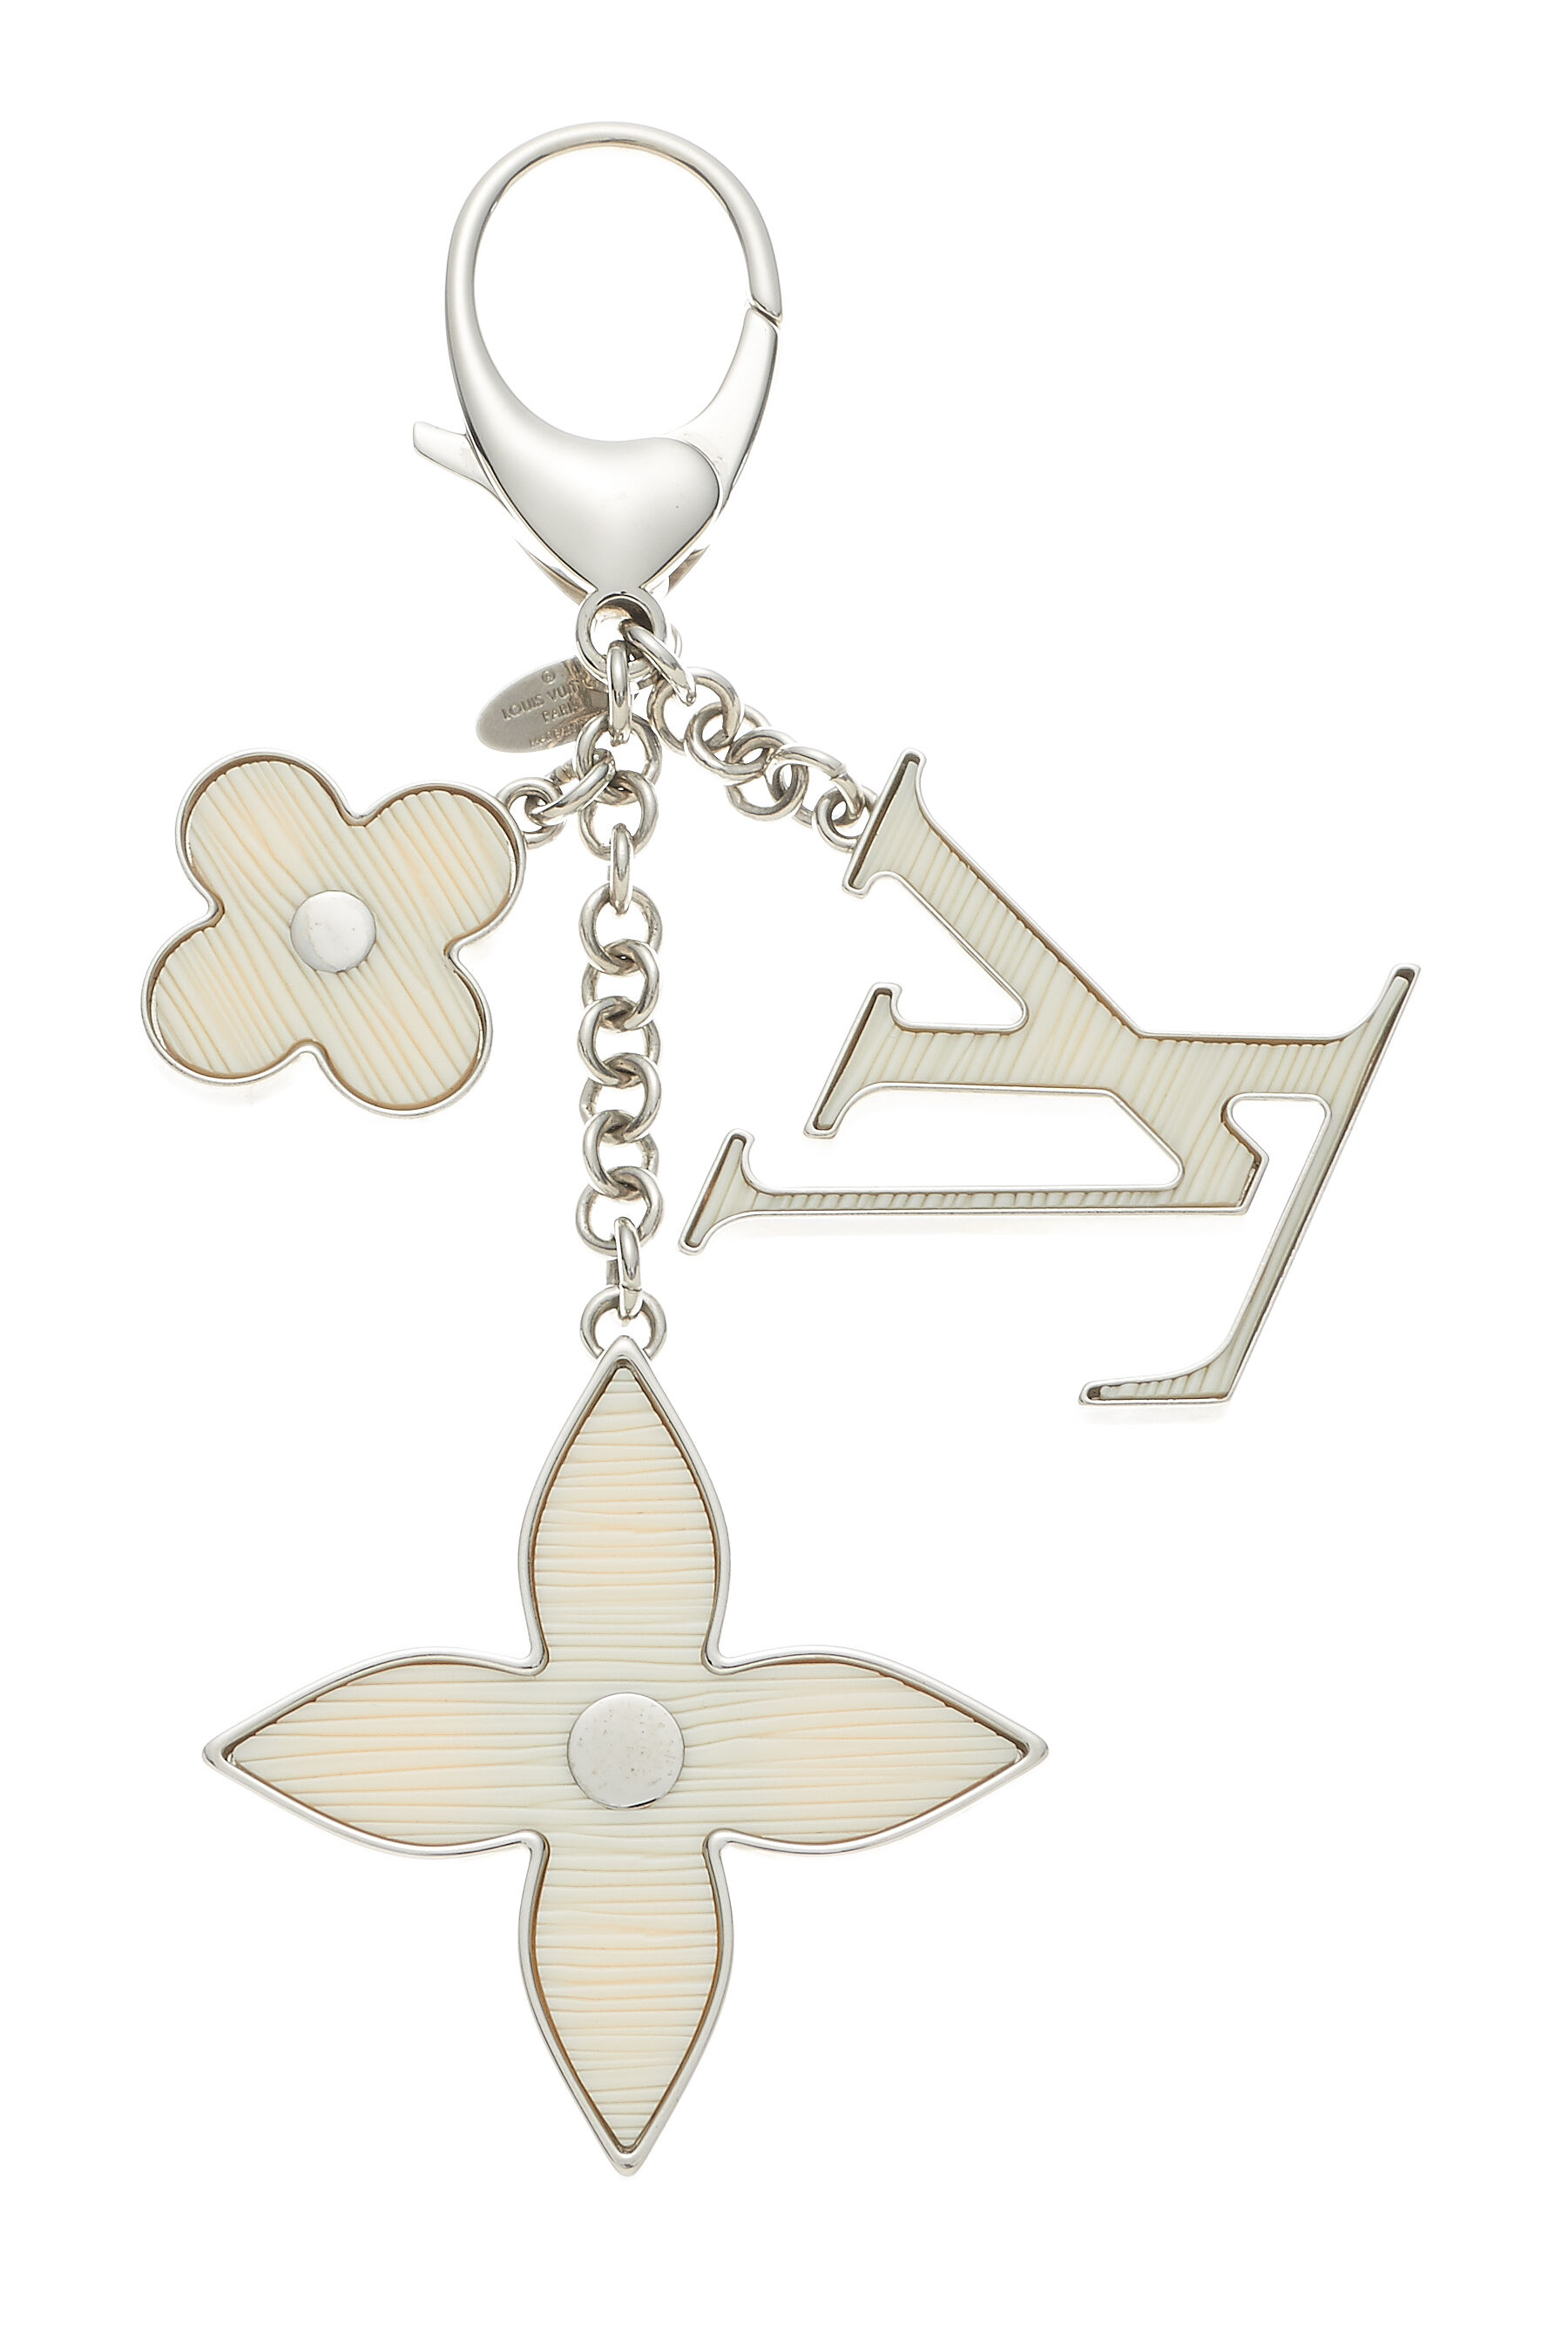 LOUIS VUITTON Fleur de Monogram Keychain Bag Charm Black epi Flower LV  Silver